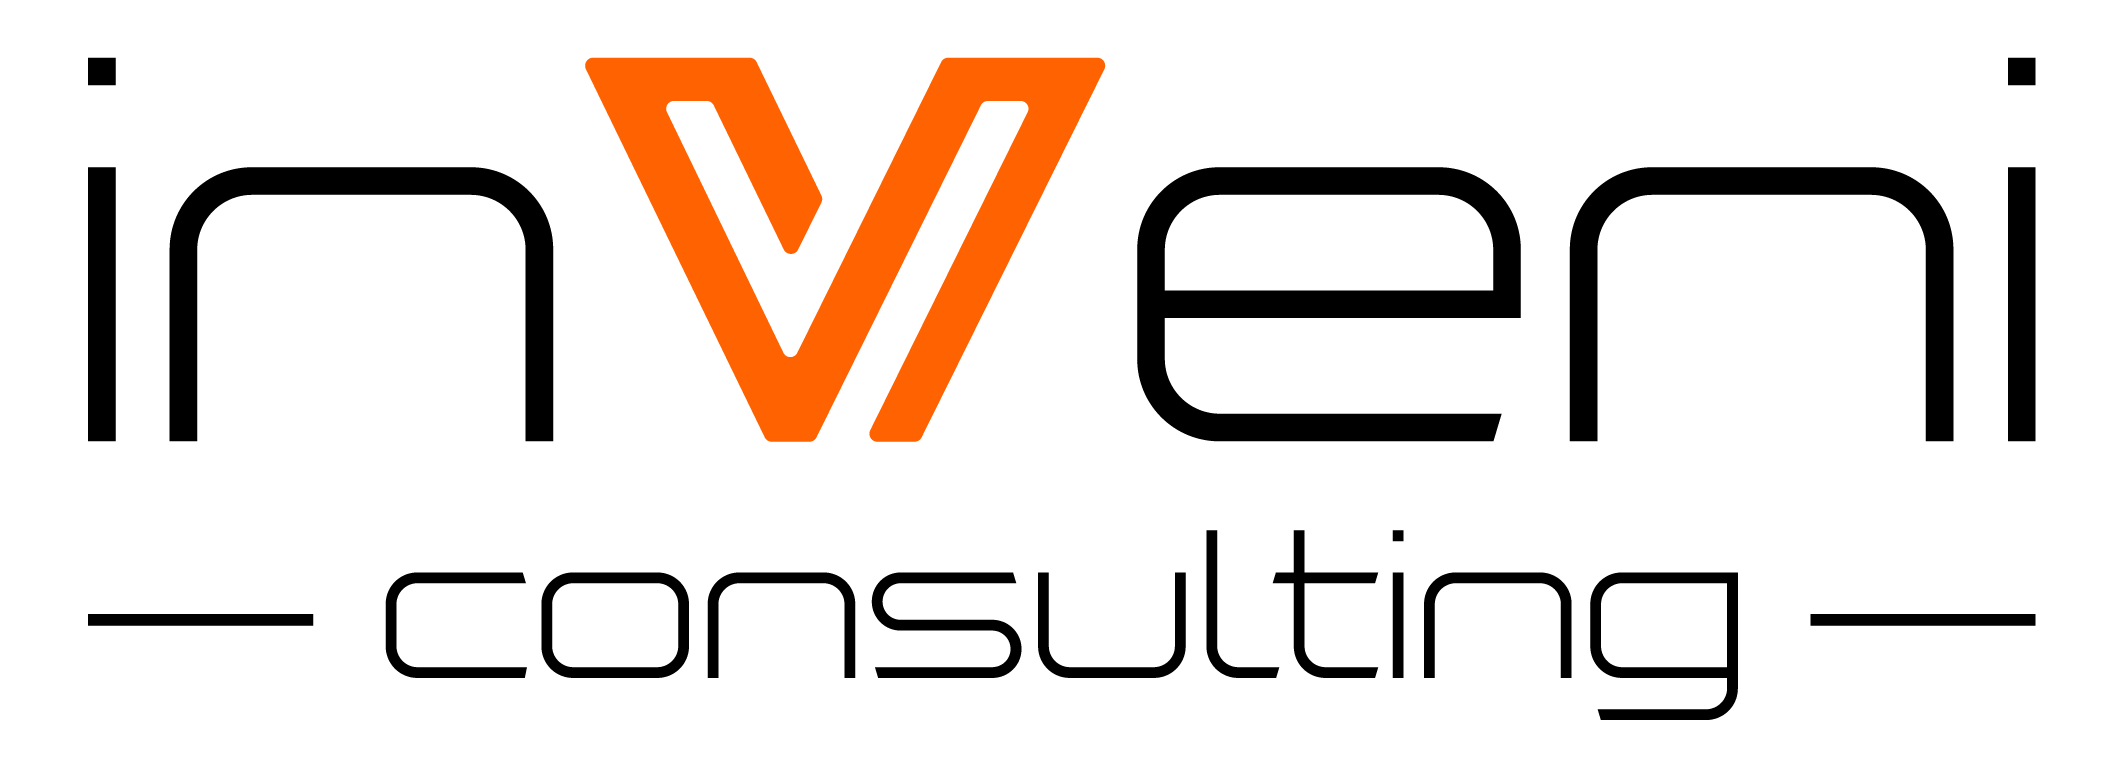 logo der inveni consulting immobilienmanagement, bestehend aus einem großen, stilisierten buchstaben v in orange